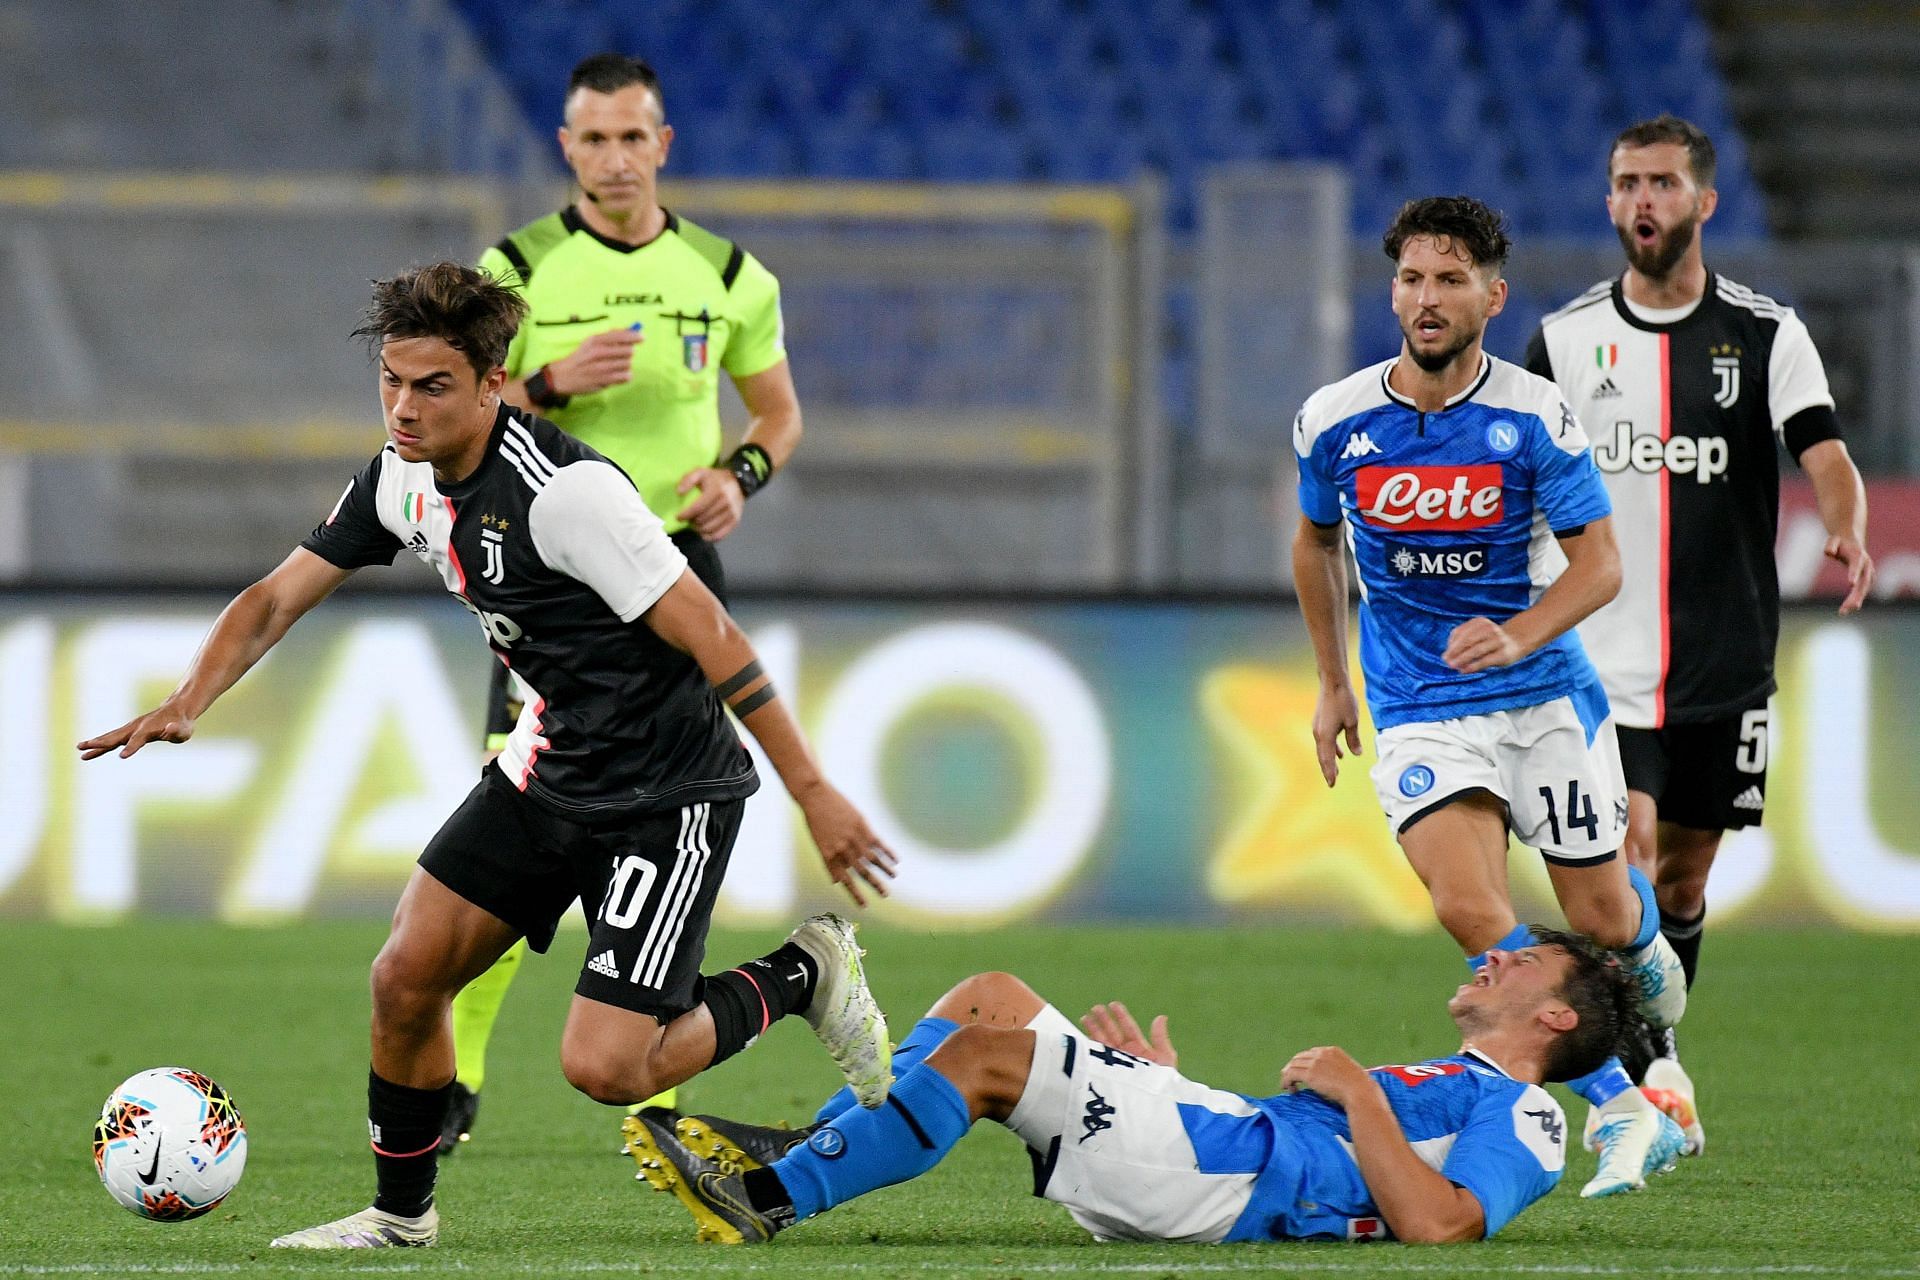 Juventus take on Napoli this week